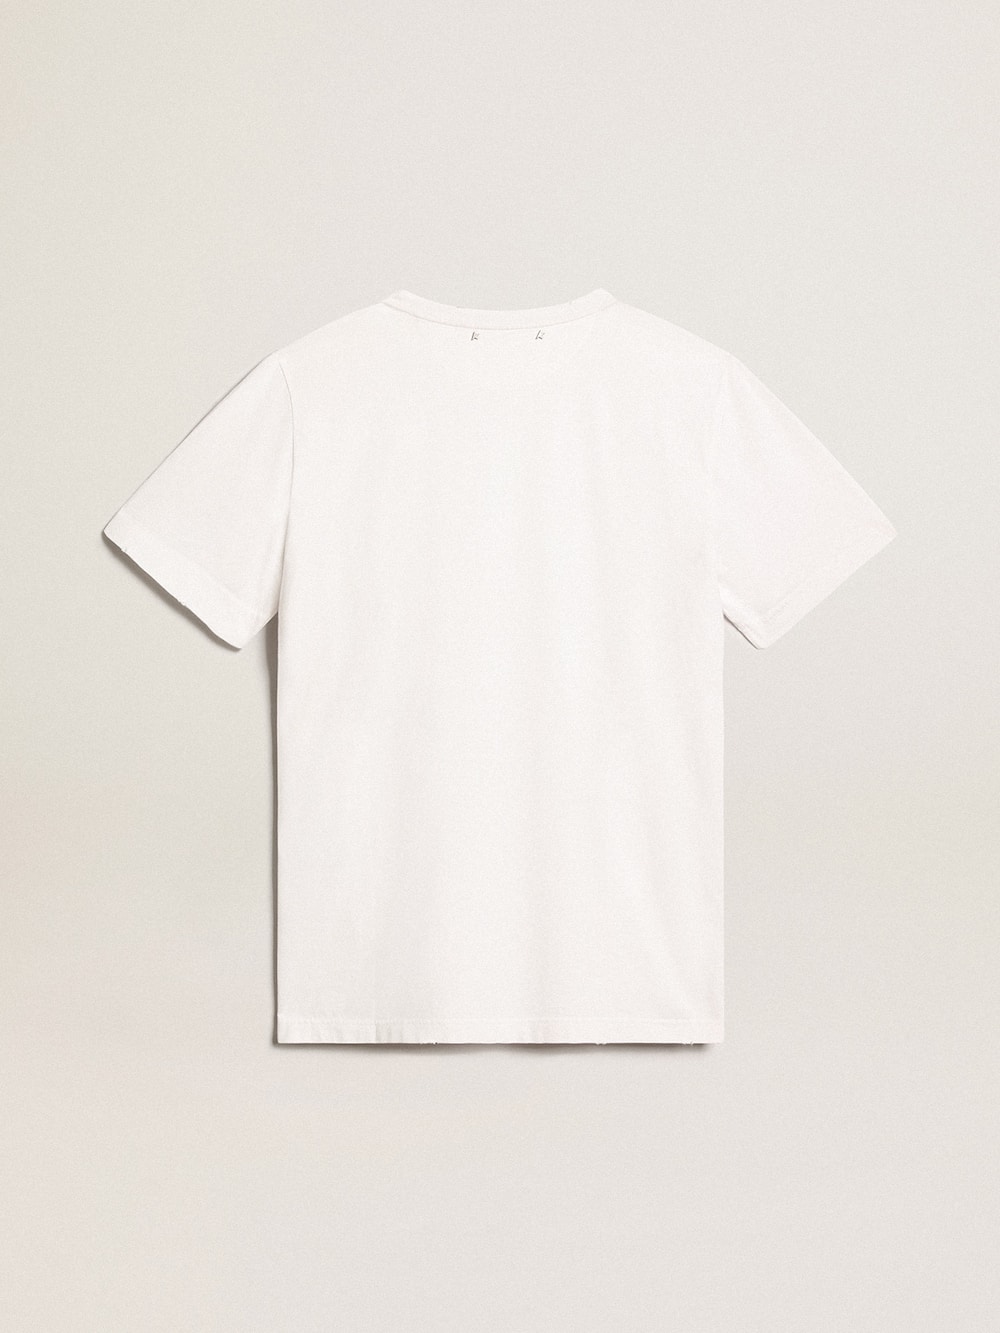 Golden Goose - Camiseta blanca con tratamiento desgastado para hombre in 